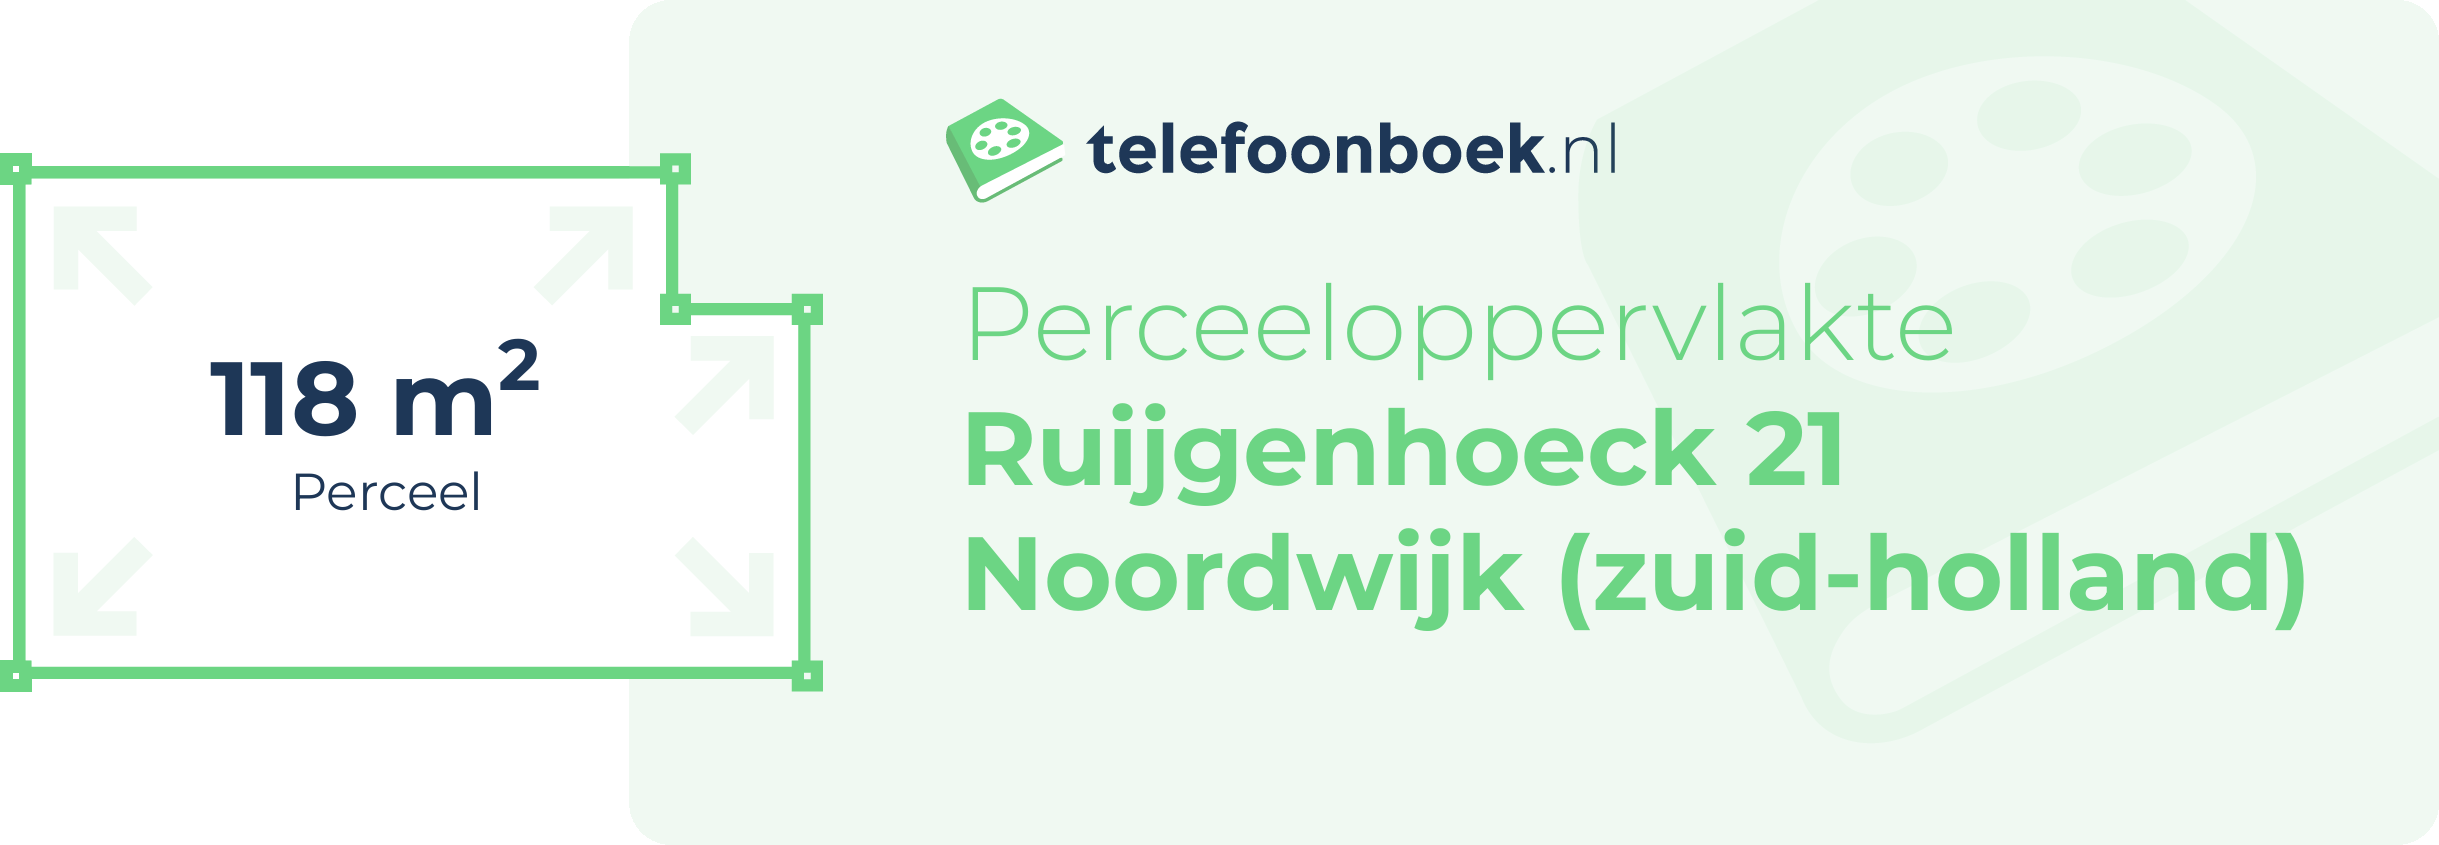 Perceeloppervlakte Ruijgenhoeck 21 Noordwijk (Zuid-Holland)